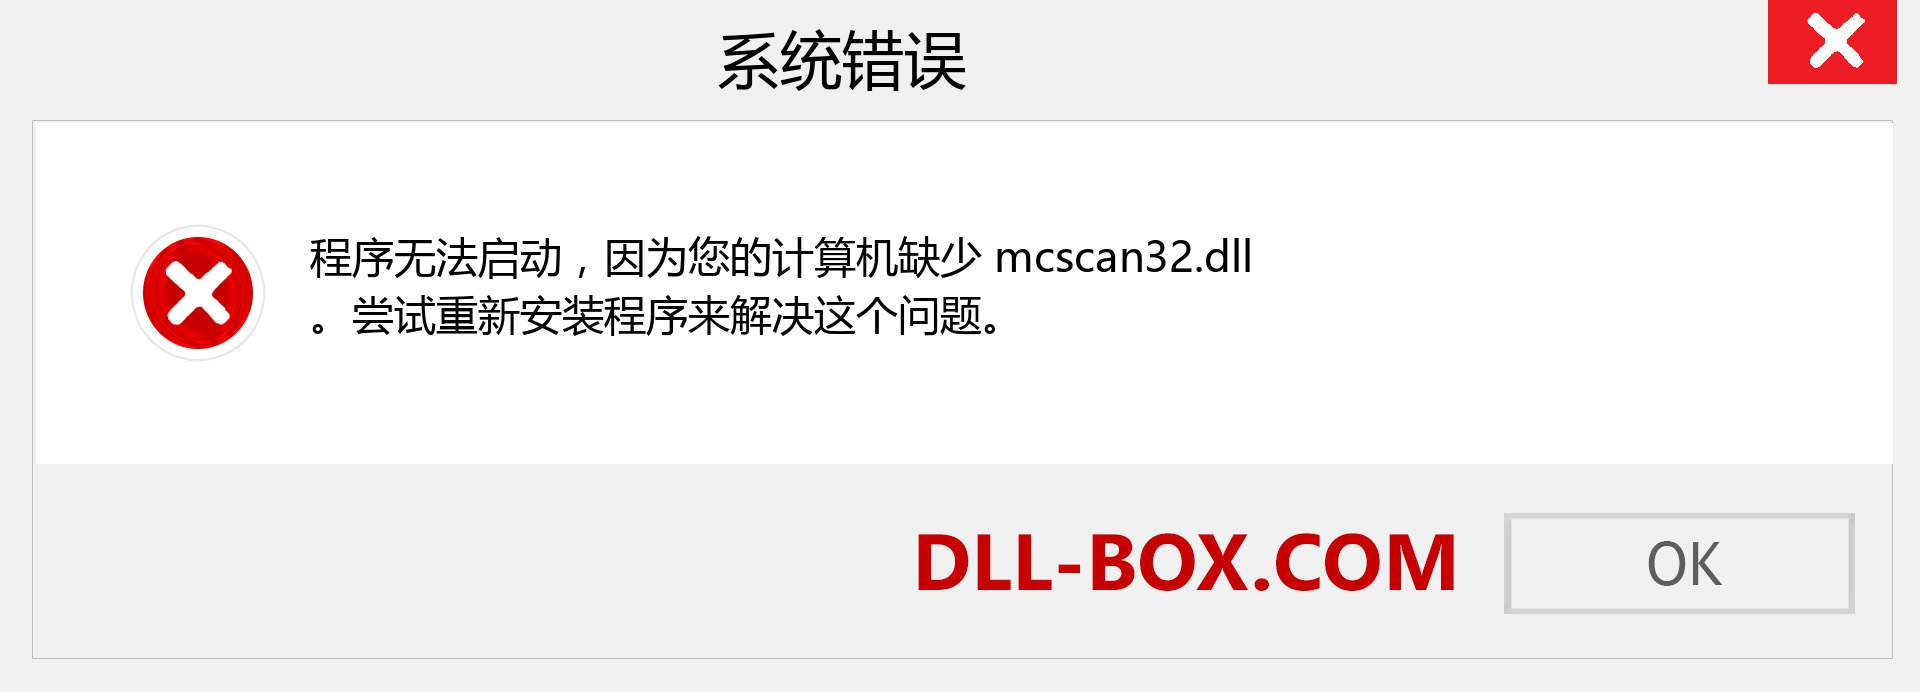 mcscan32.dll 文件丢失？。 适用于 Windows 7、8、10 的下载 - 修复 Windows、照片、图像上的 mcscan32 dll 丢失错误